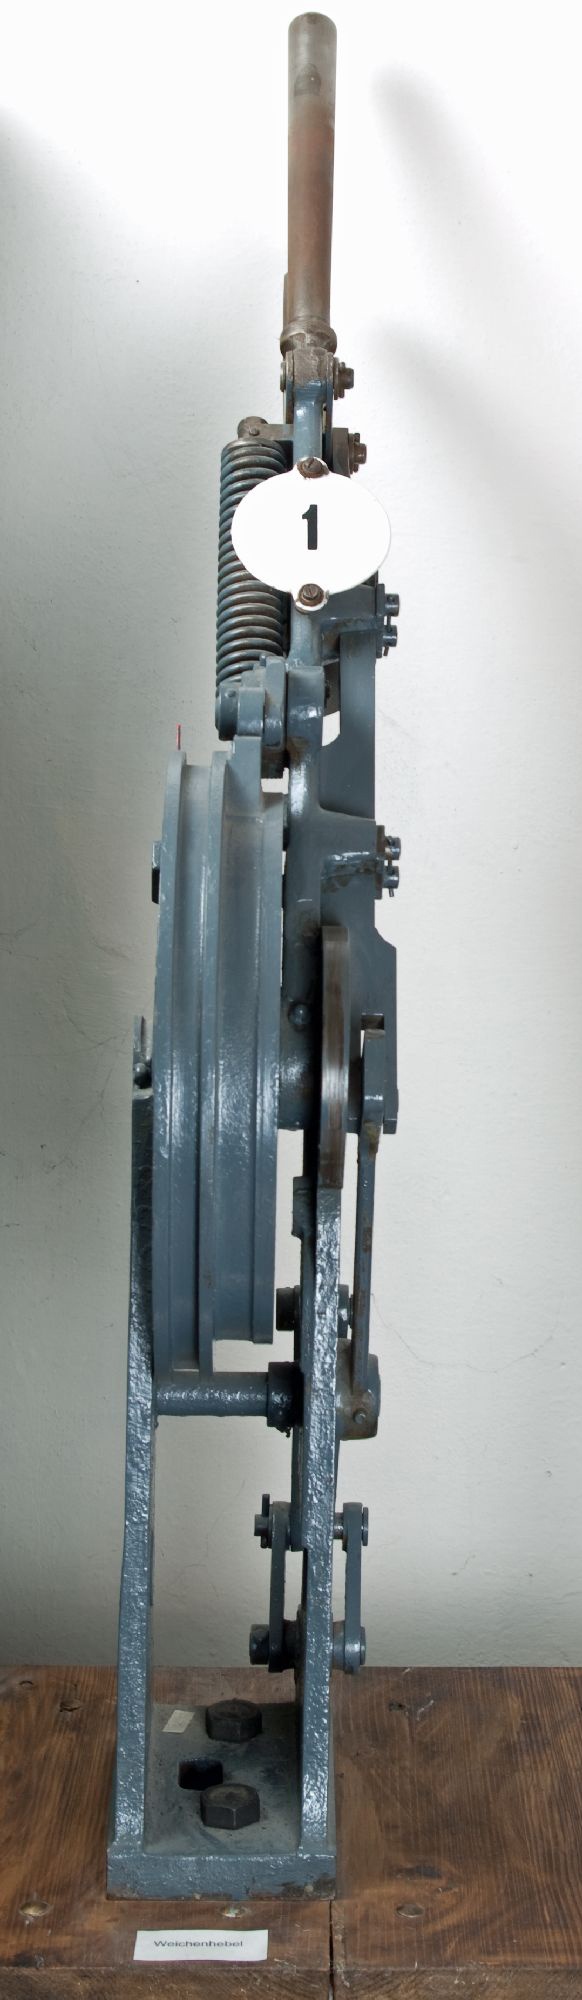 Mechanischer Weichenhebel (Werratalmuseum Gerstungen CC BY-NC-SA)